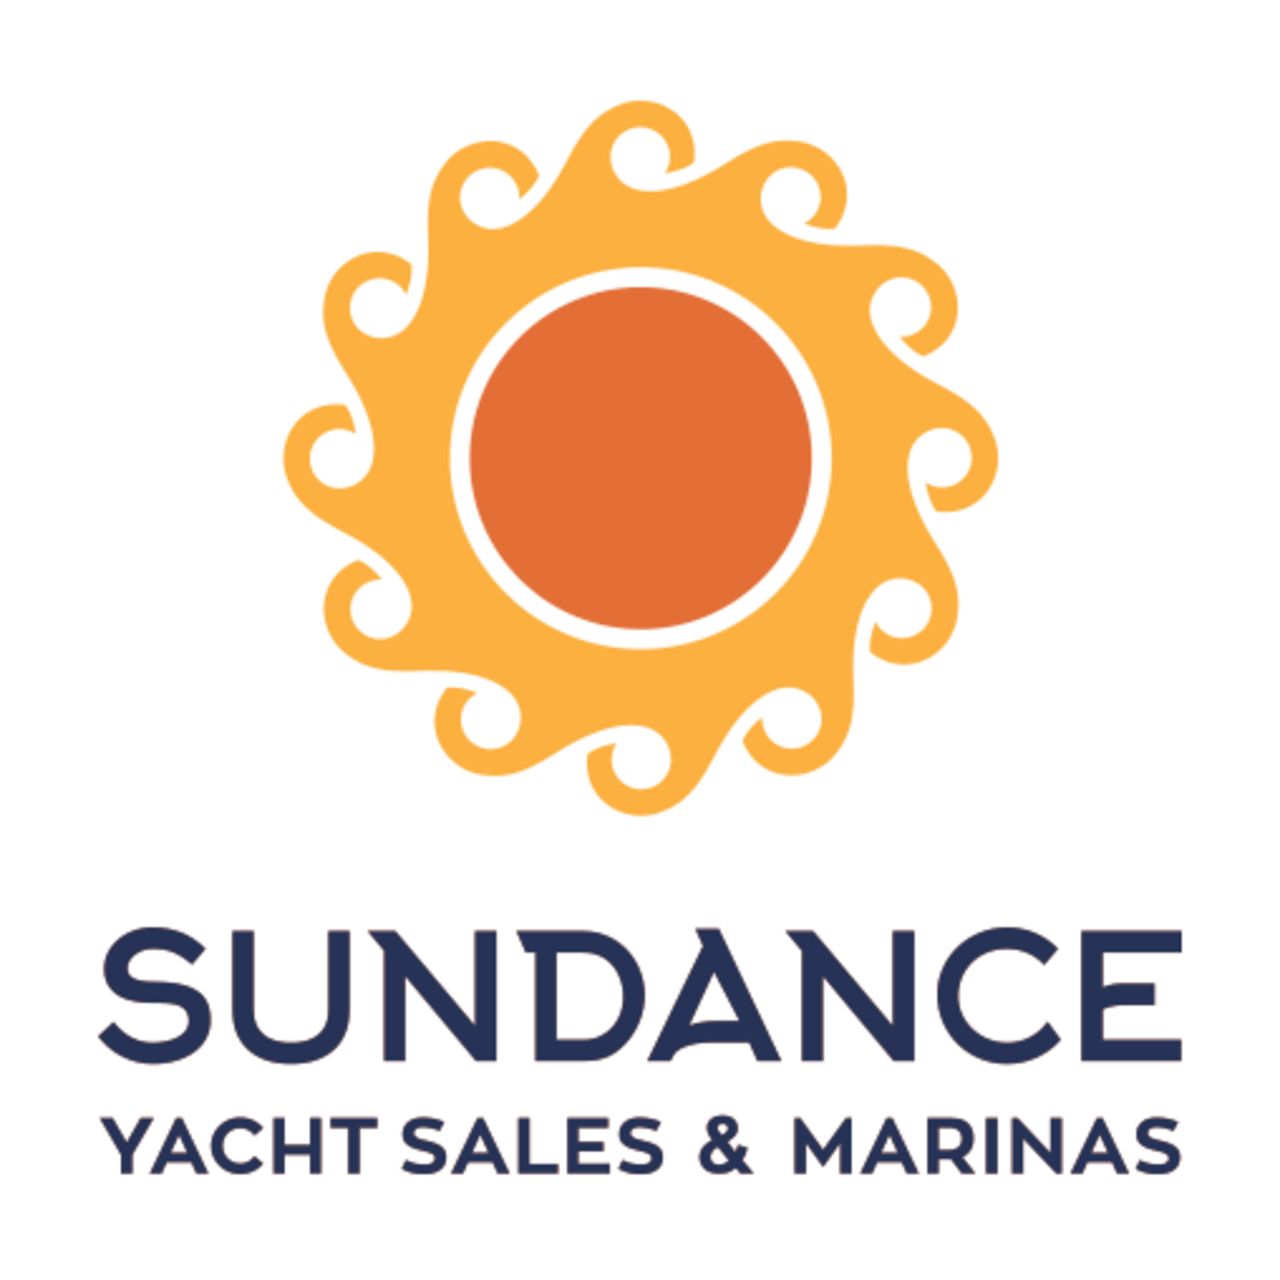 Sundance Yacht Sales